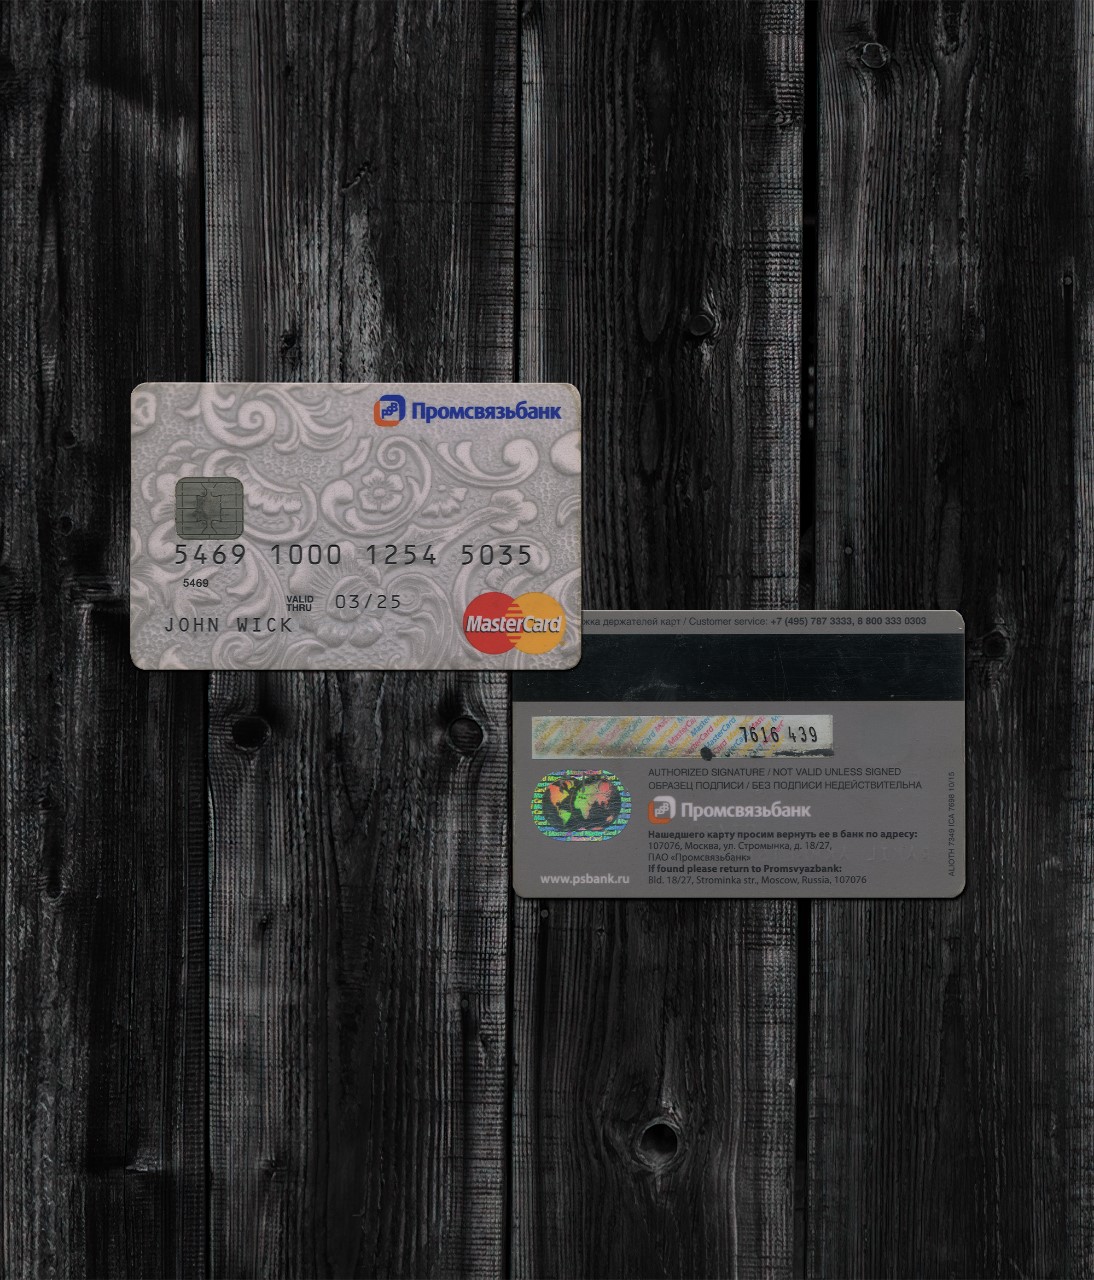 Promsvyaz Bank Card PSD2